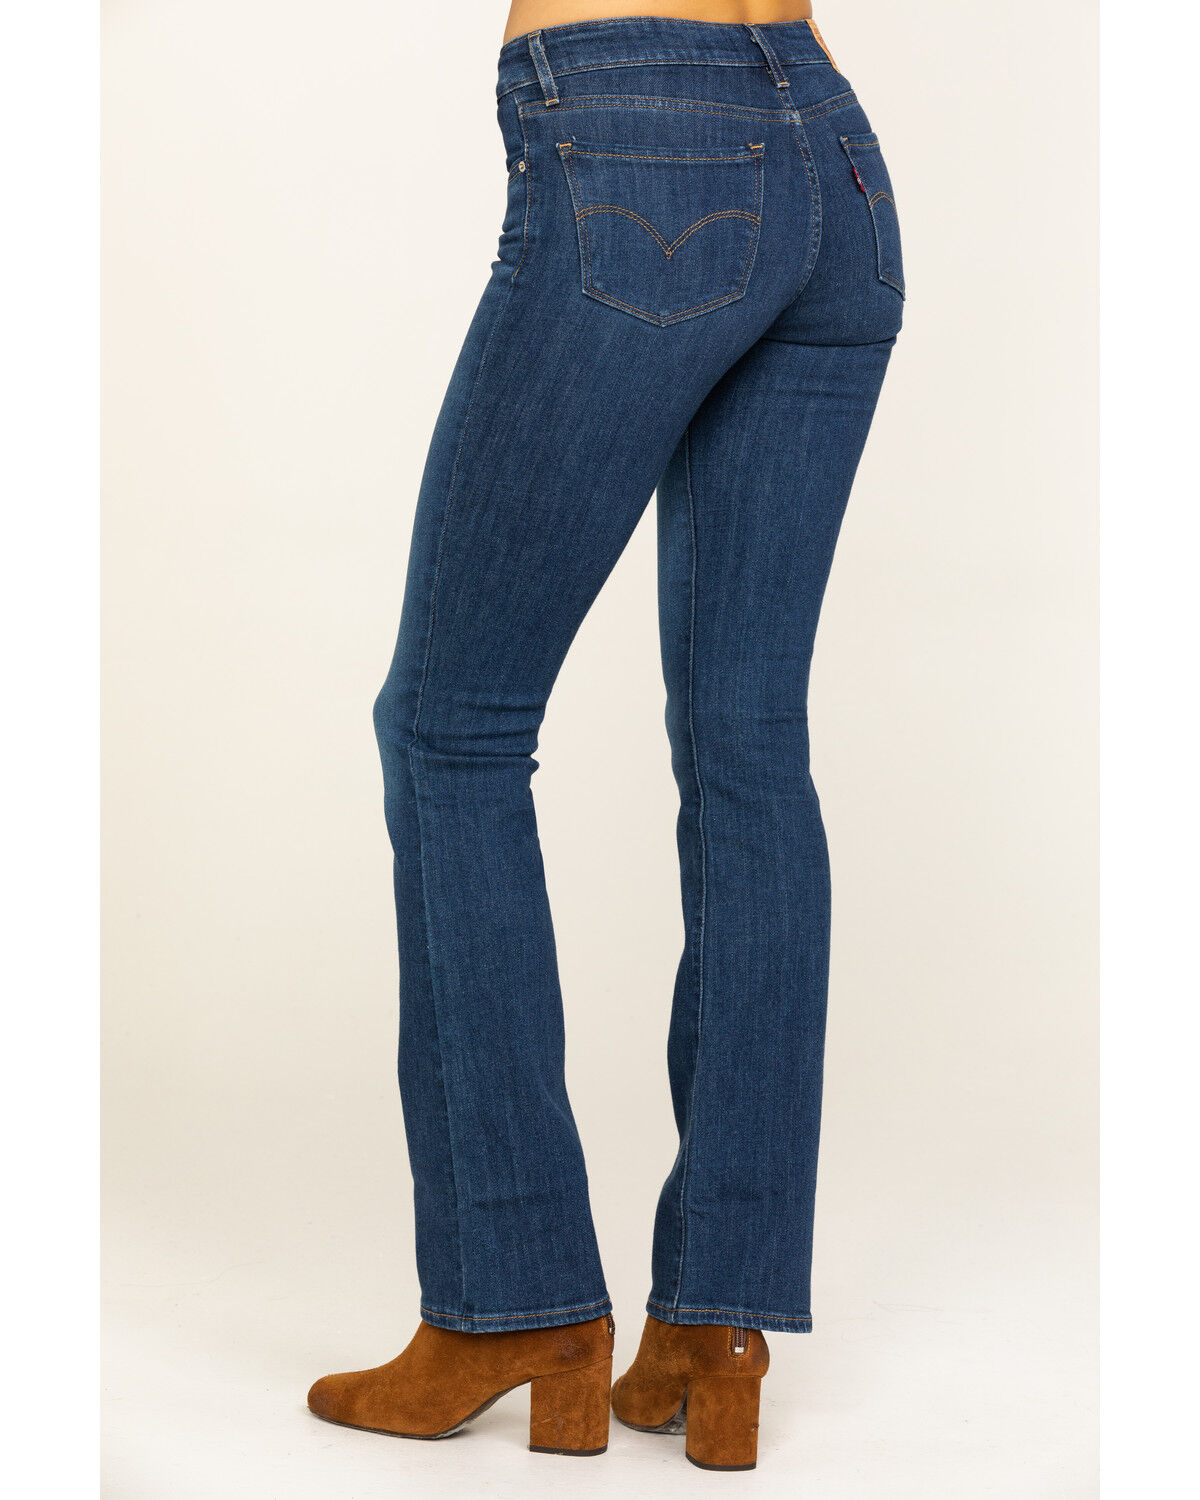 jeans levis 715 bootcut